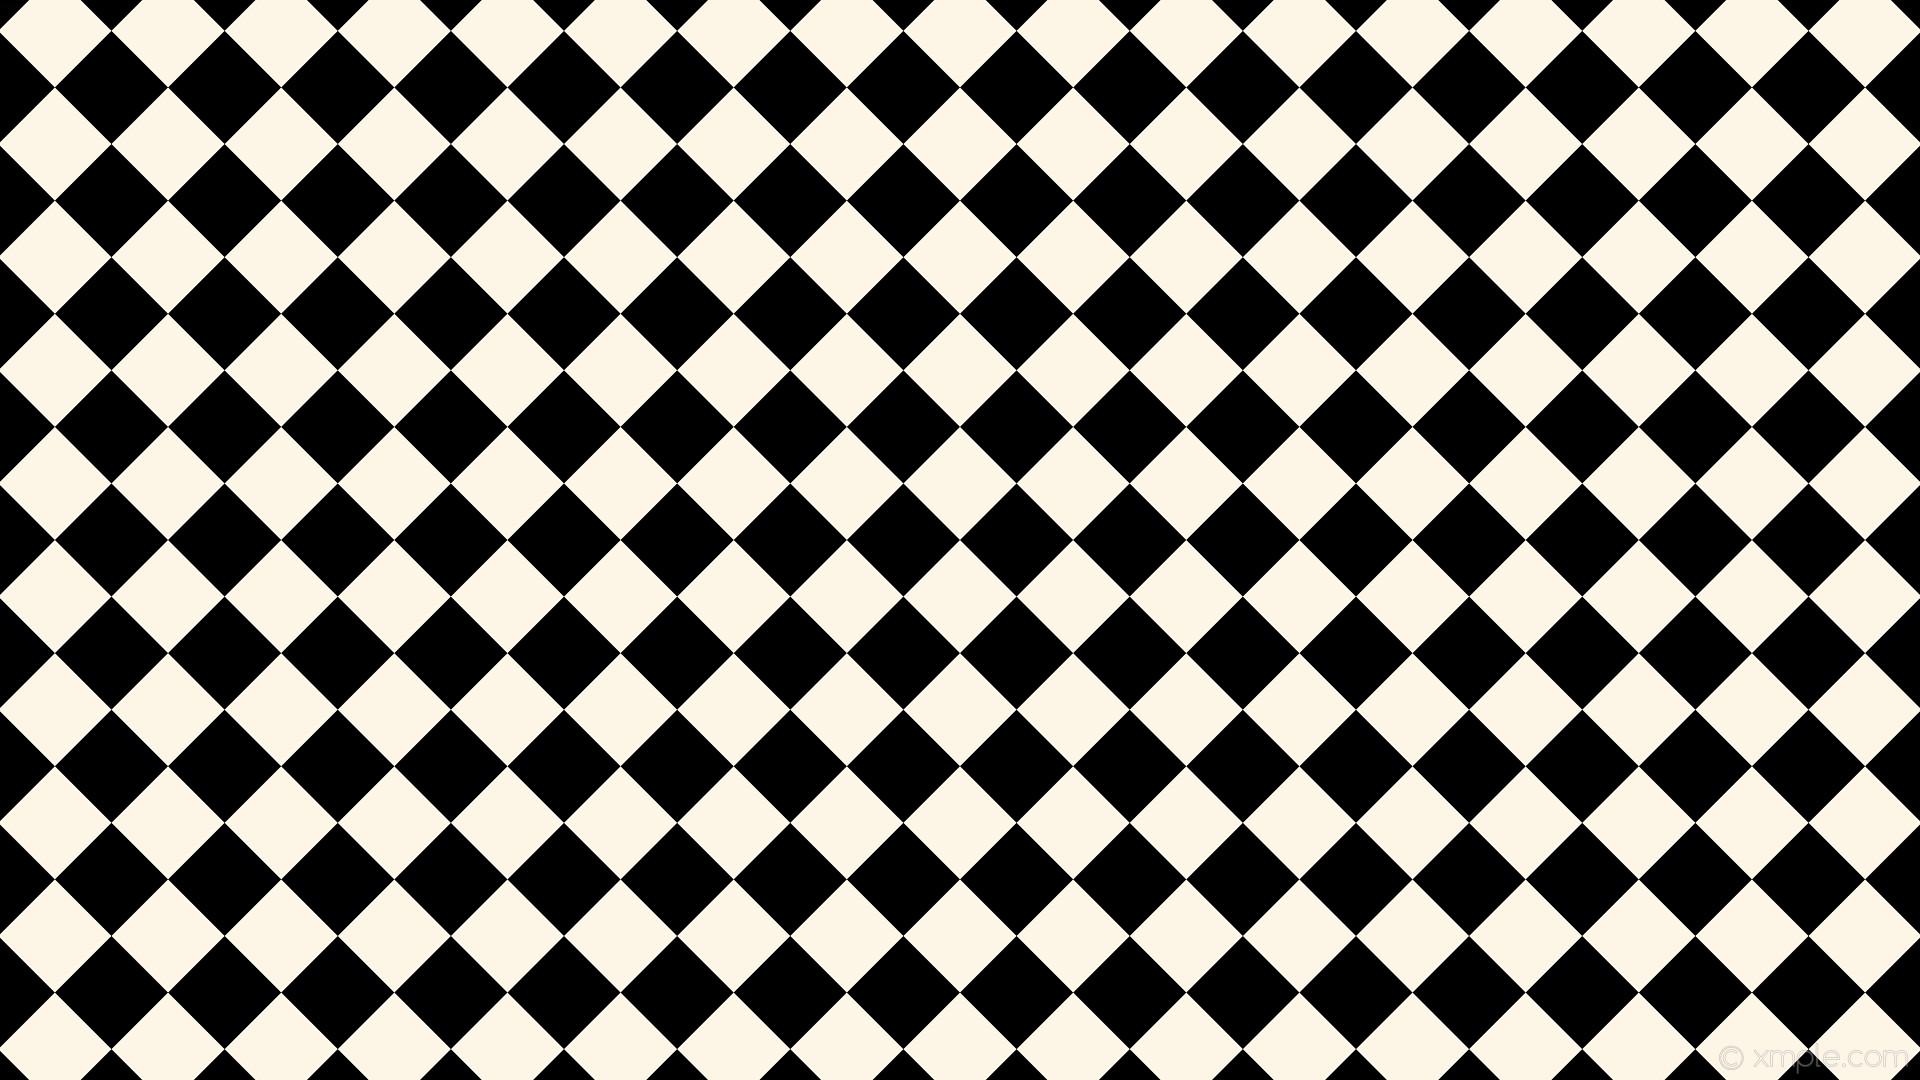 Black and White Checkerboard Wallpaper